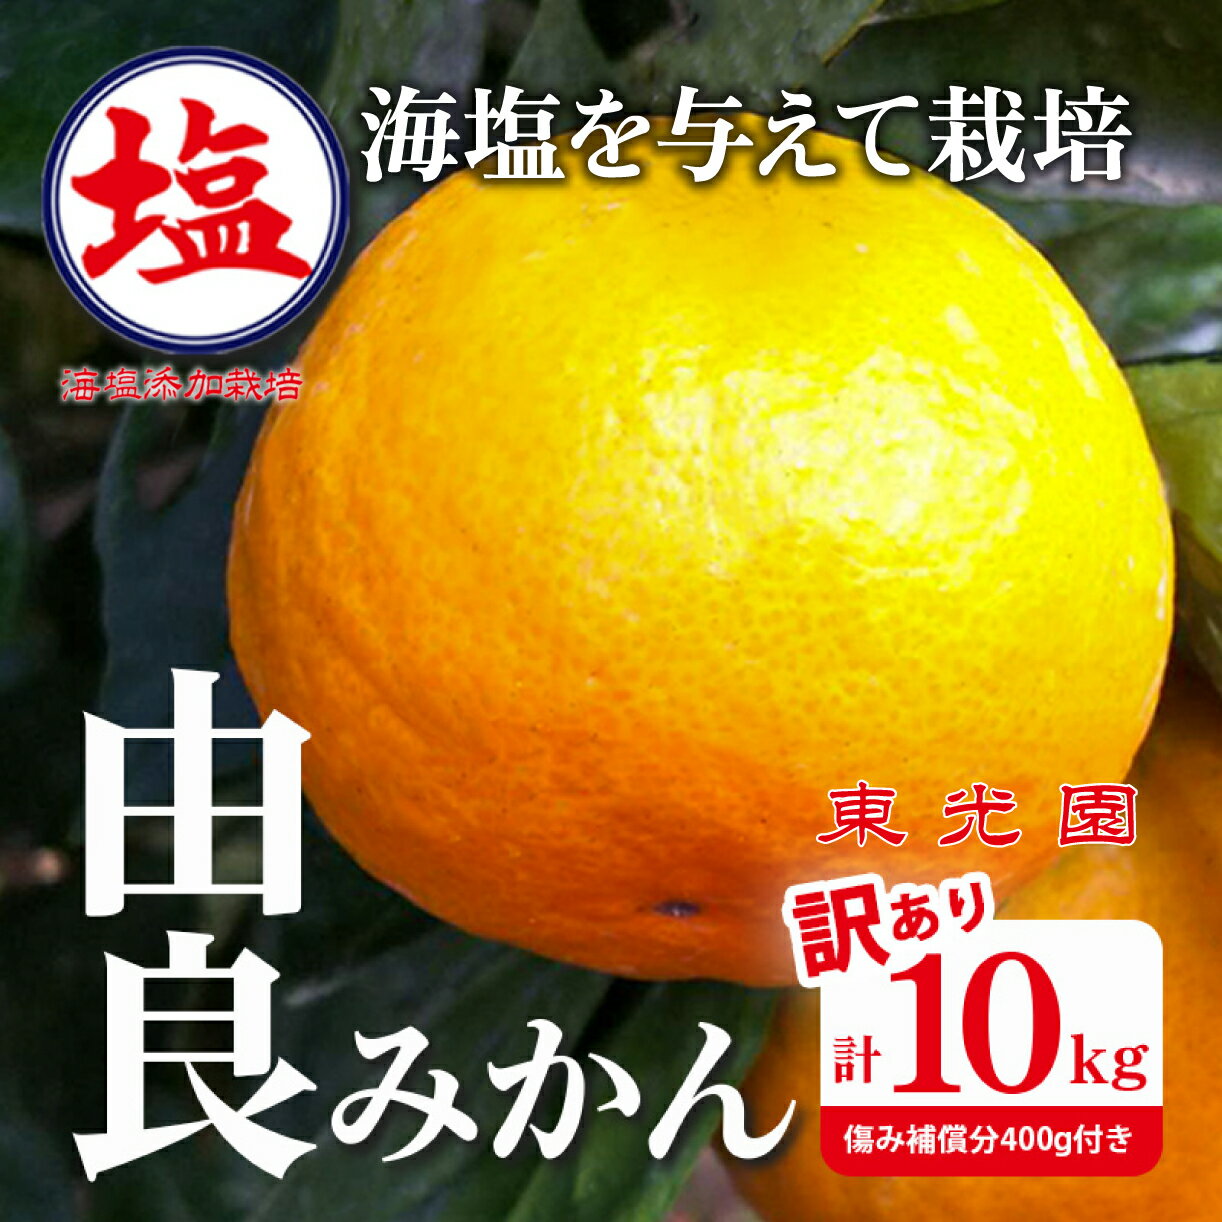 【ふるさと納税】 予約受付 訳あり みかん 由良 計 5kg 以上 傷み補償分200g付き 蜜柑 柑橘 オレンジ